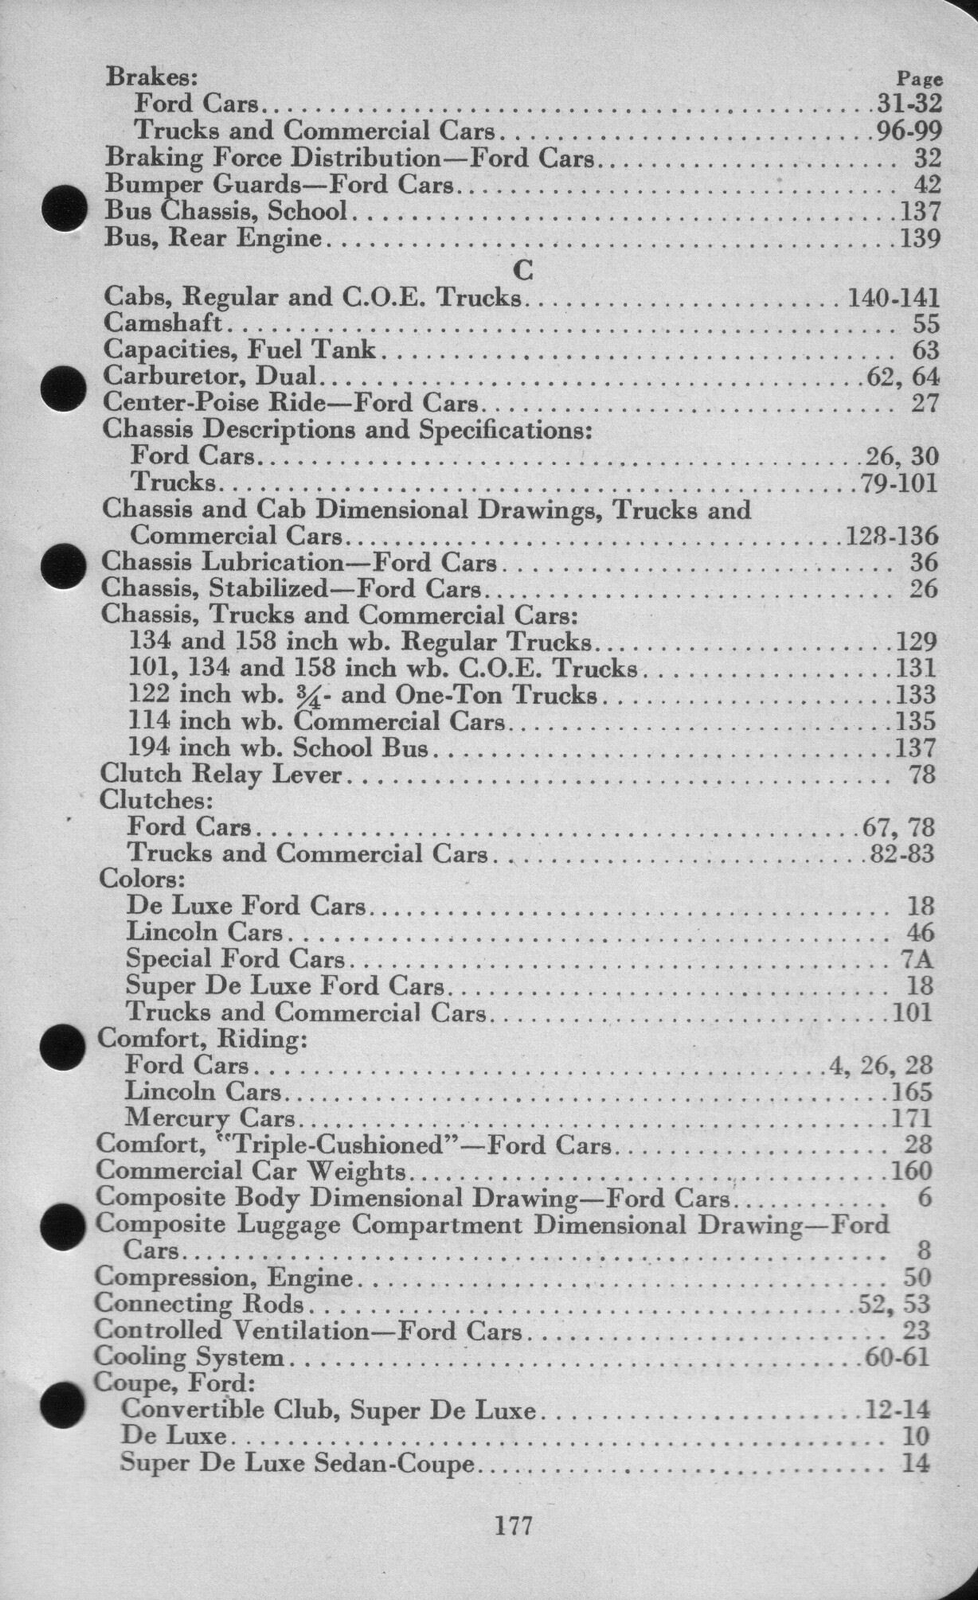 n_1942 Ford Salesmans Reference Manual-177.jpg